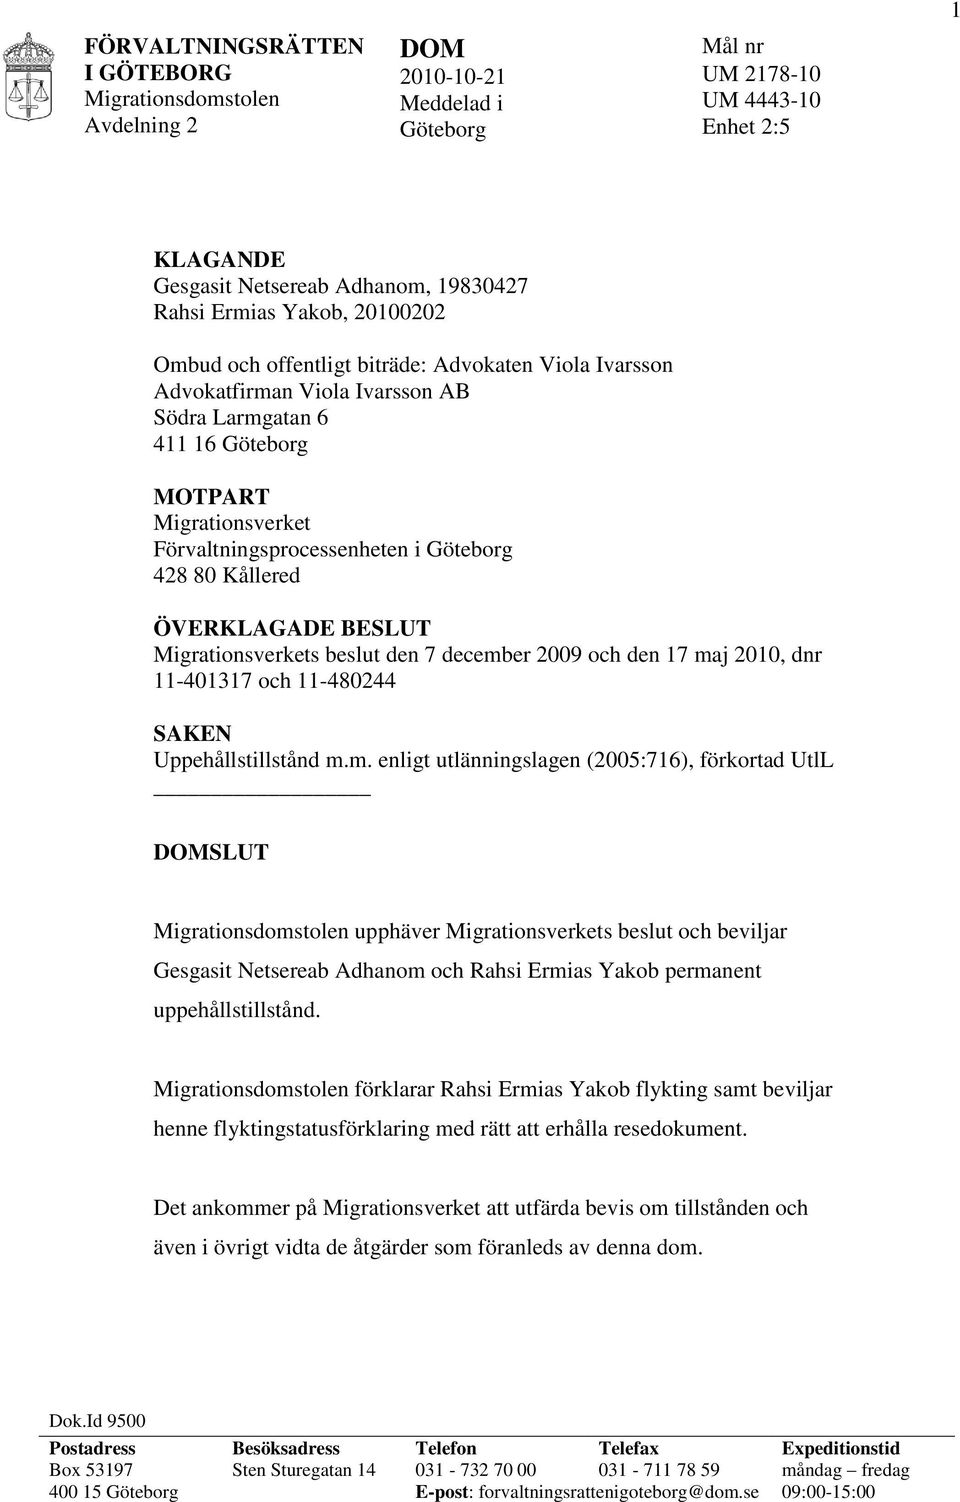 december 2009 och den 17 maj 2010, dnr 11-401317 och 11-480244 SAKEN Uppehållstillstånd m.m. enligt utlänningslagen (2005:716), förkortad UtlL DOMSLUT upphäver Migrationsverkets beslut och beviljar Gesgasit Netsereab Adhanom och Rahsi Ermias Yakob permanent uppehållstillstånd.